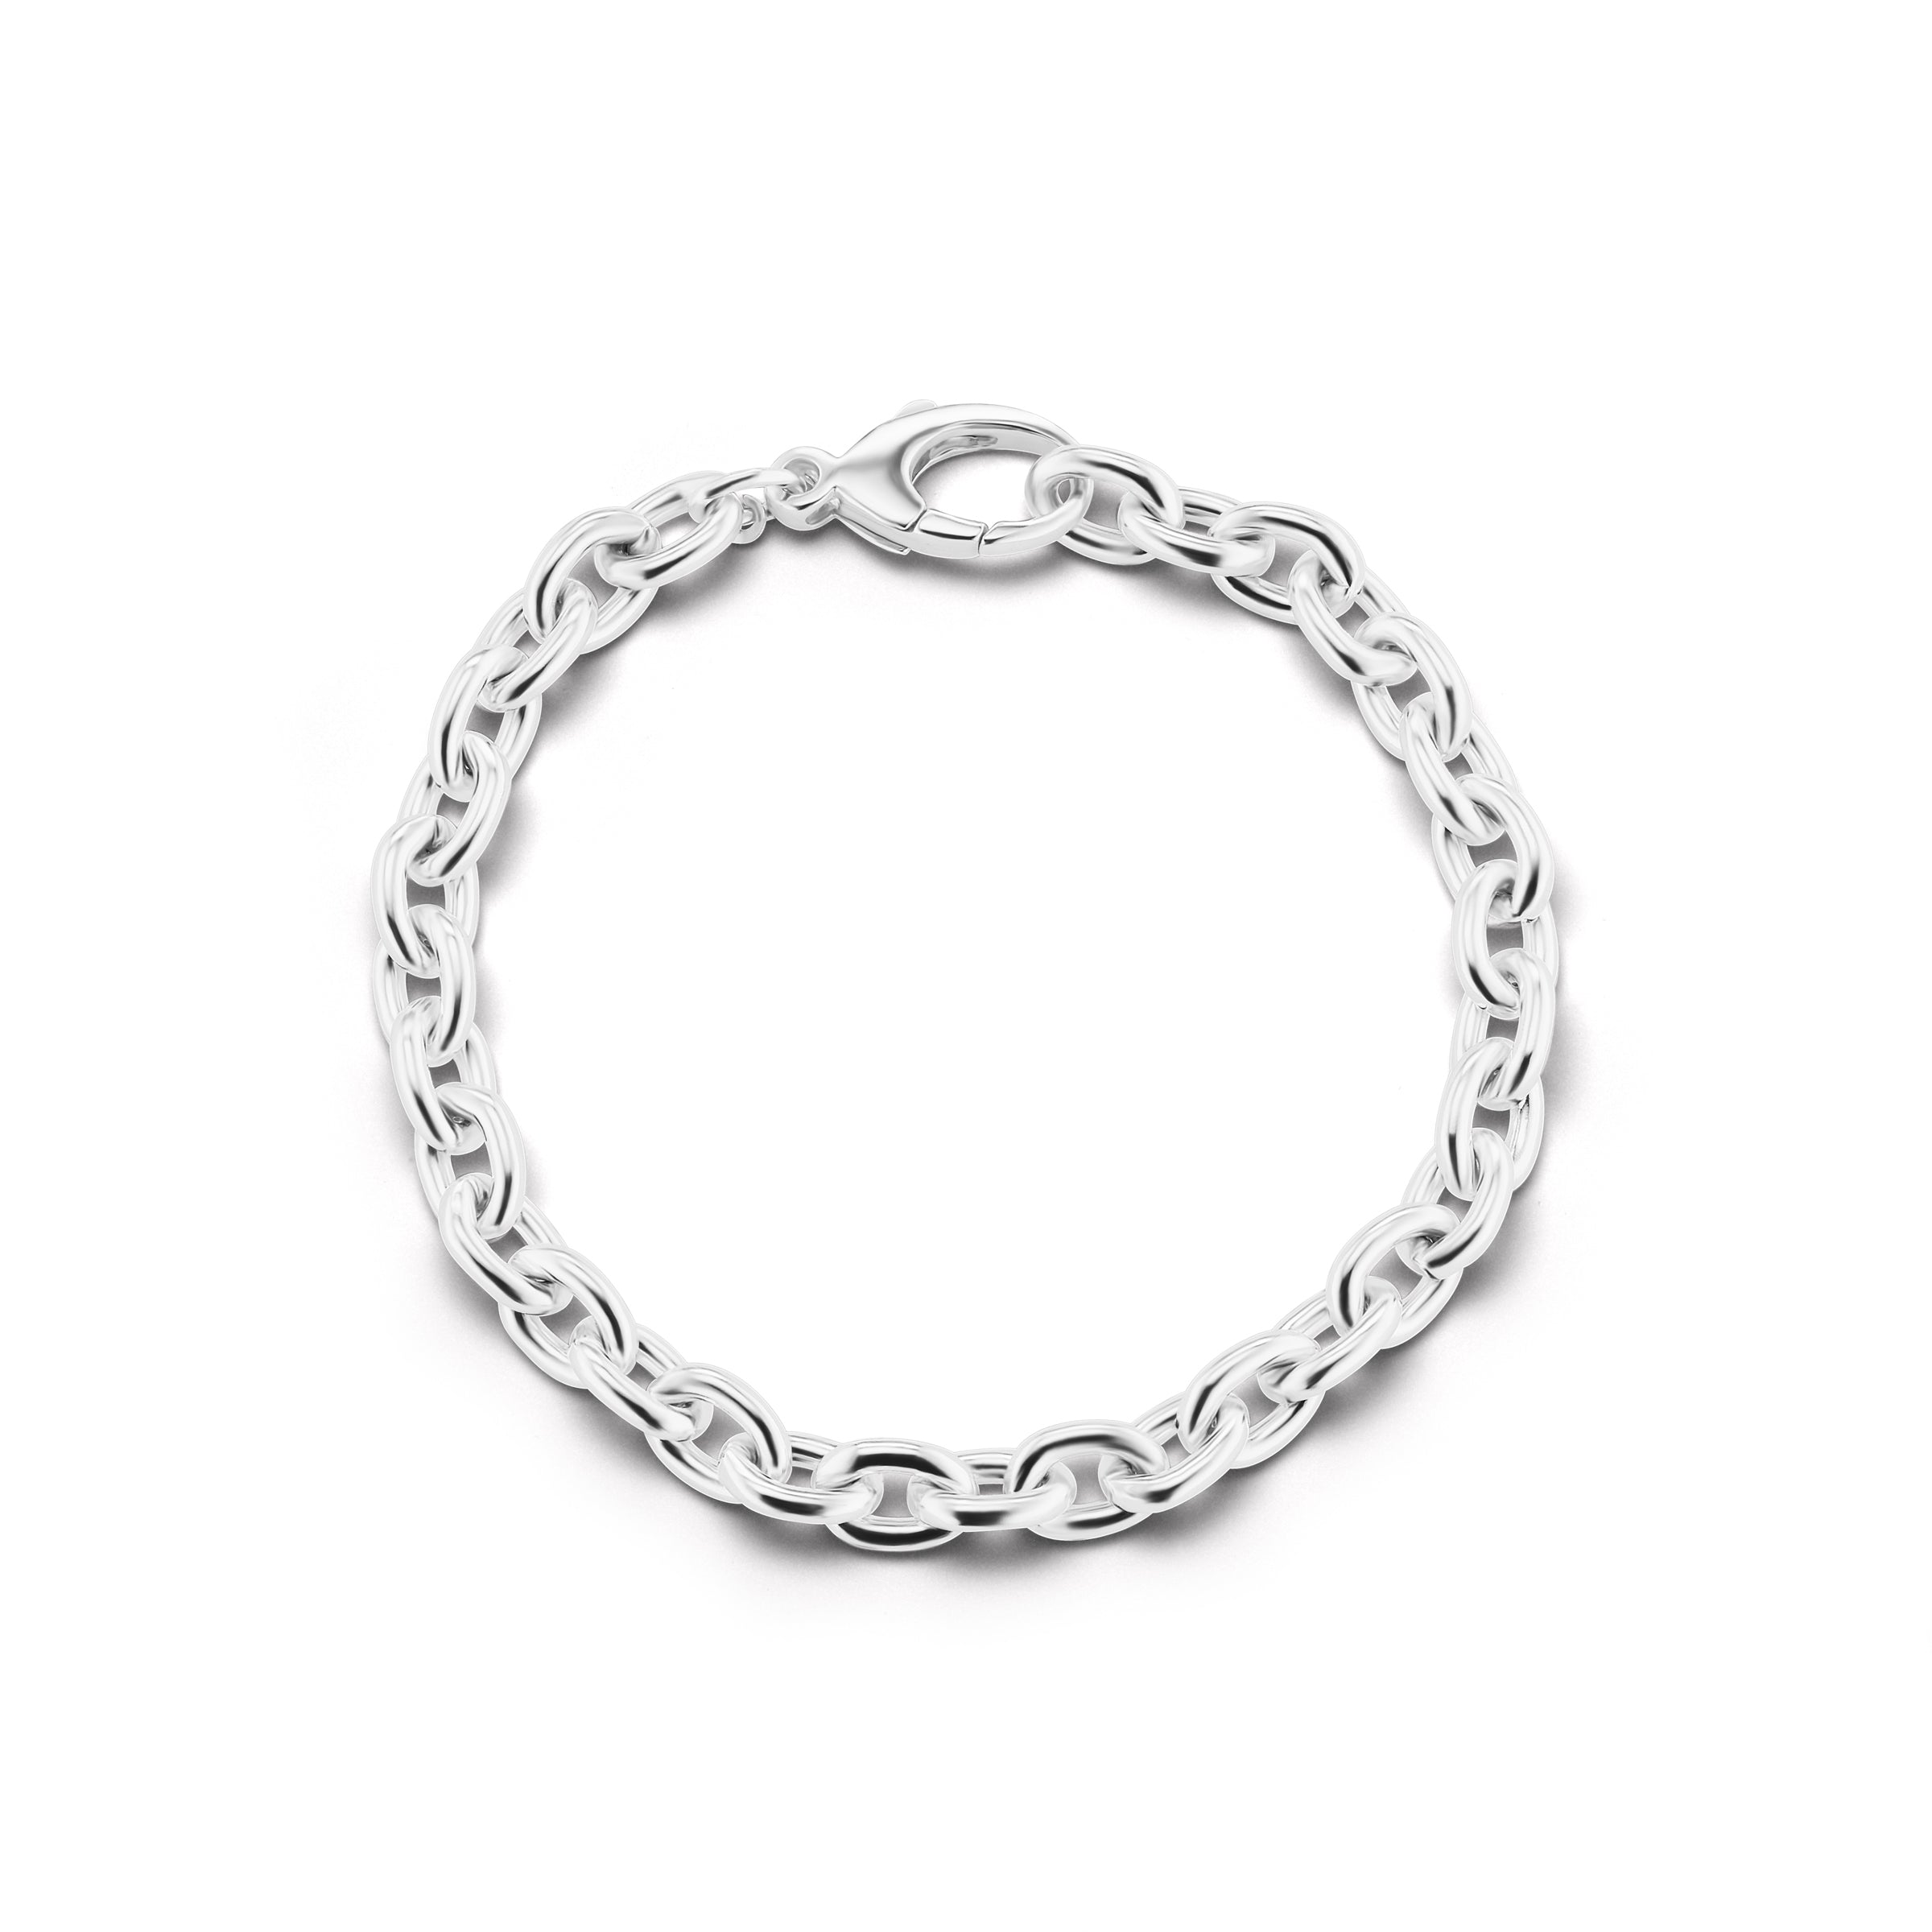 The Silver Ludlow Bracelet